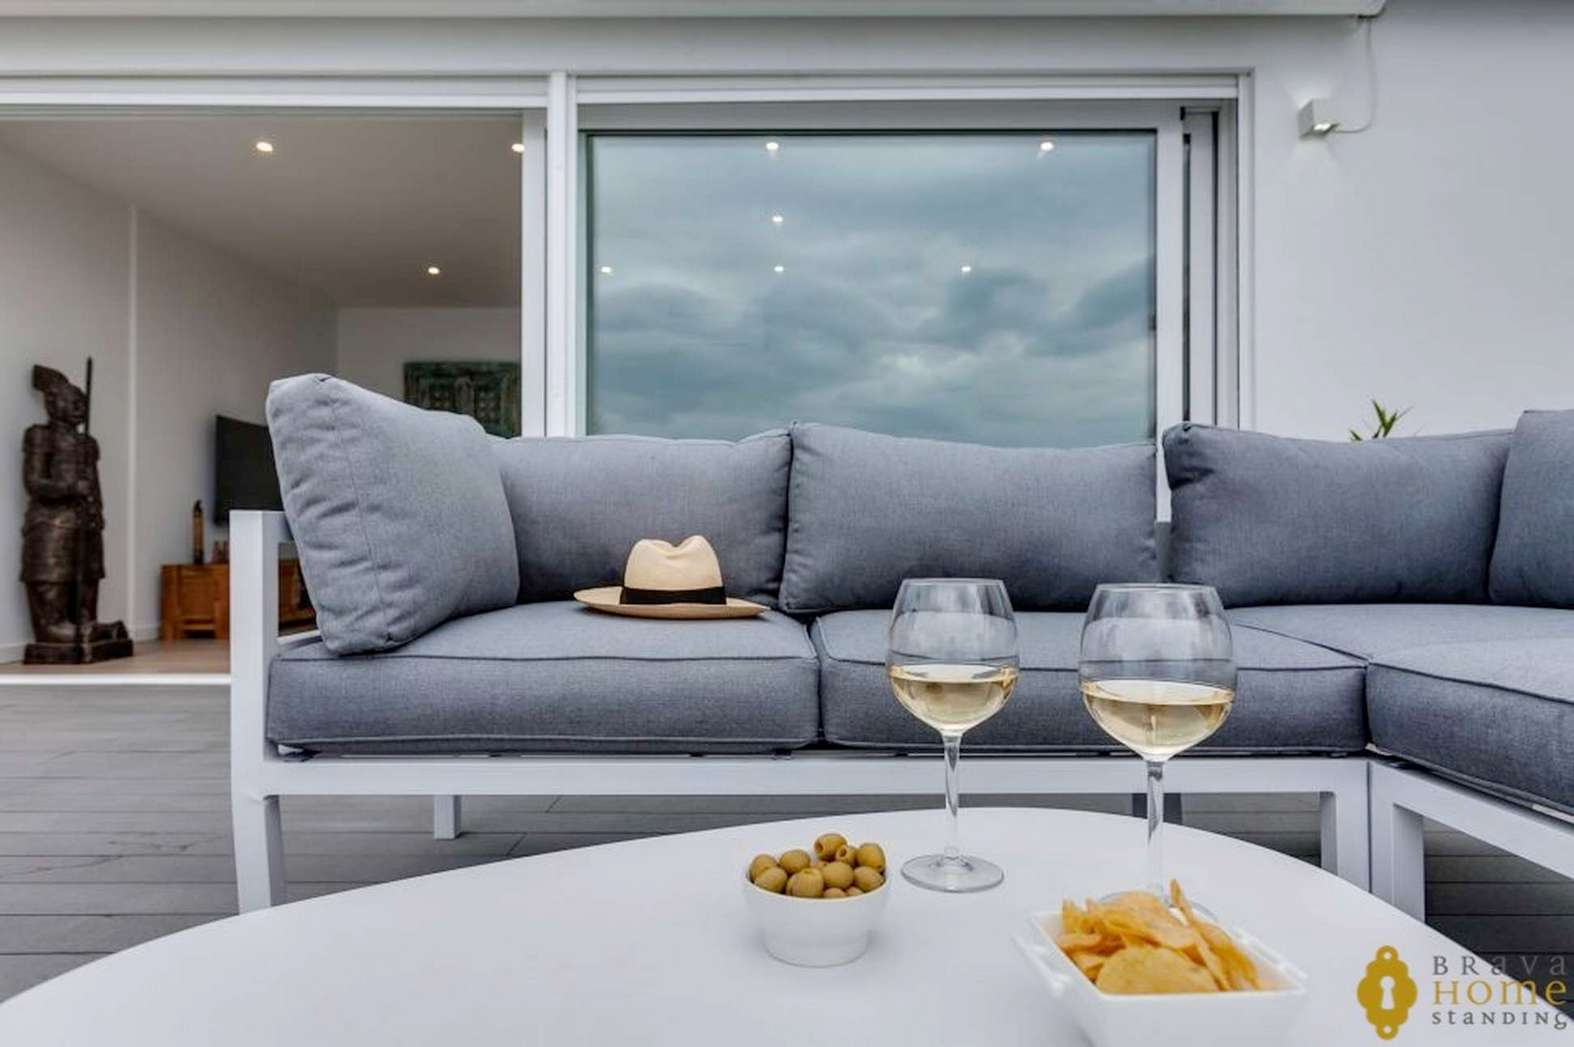 Casa d'obra nova amb unes excepcionals vistes al mar molt a prop del centre de Roses, en venda